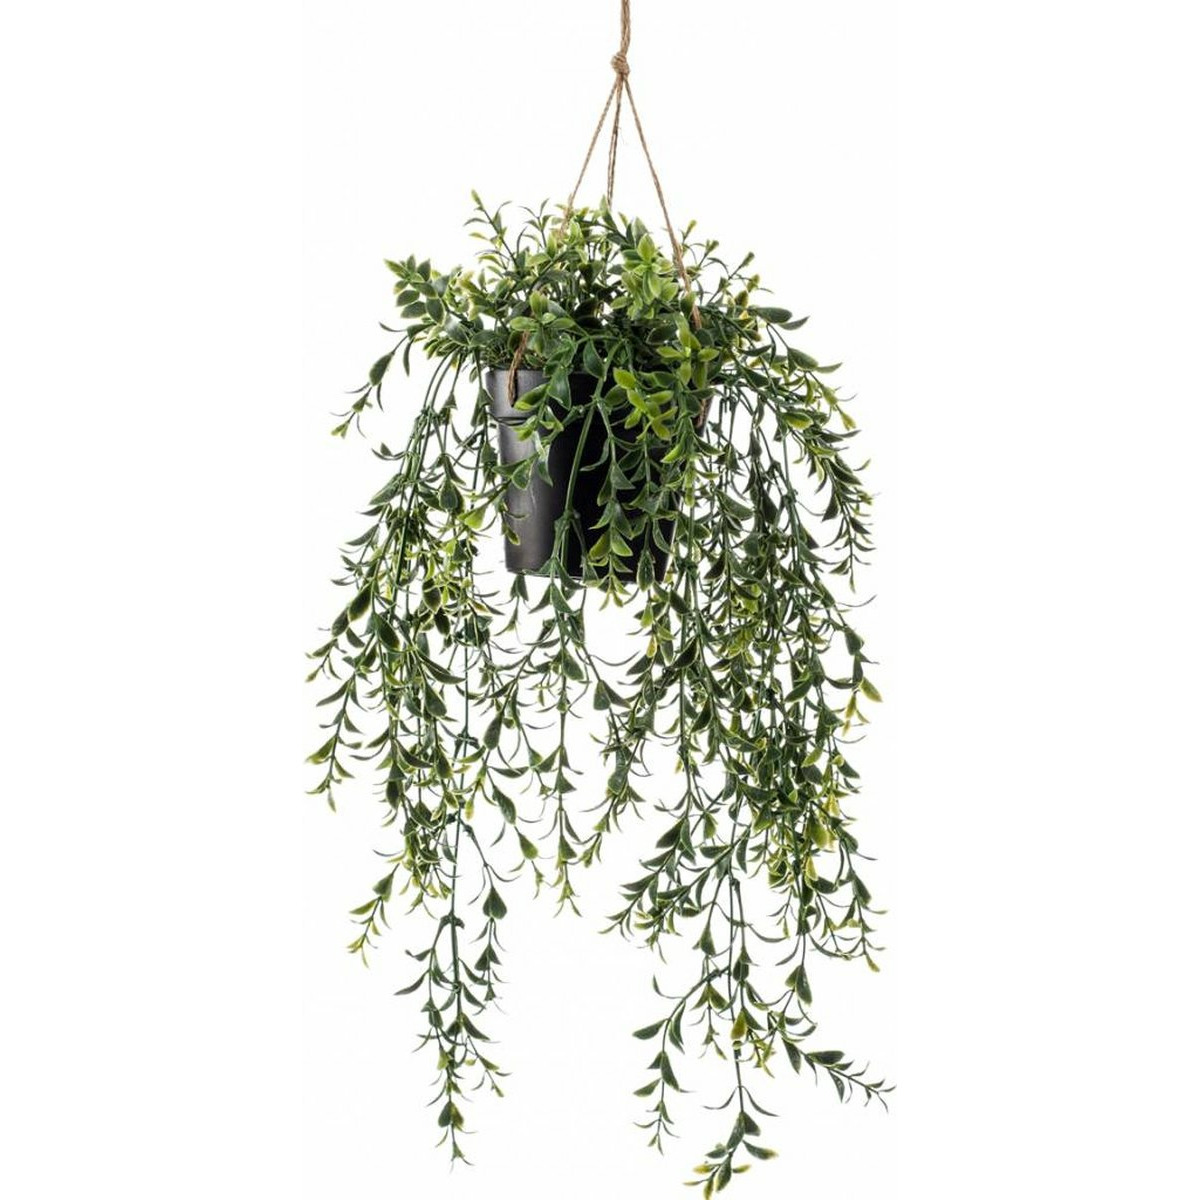 Emerald kunstplant-hangplant in pot Buxus groen 50 cm lang